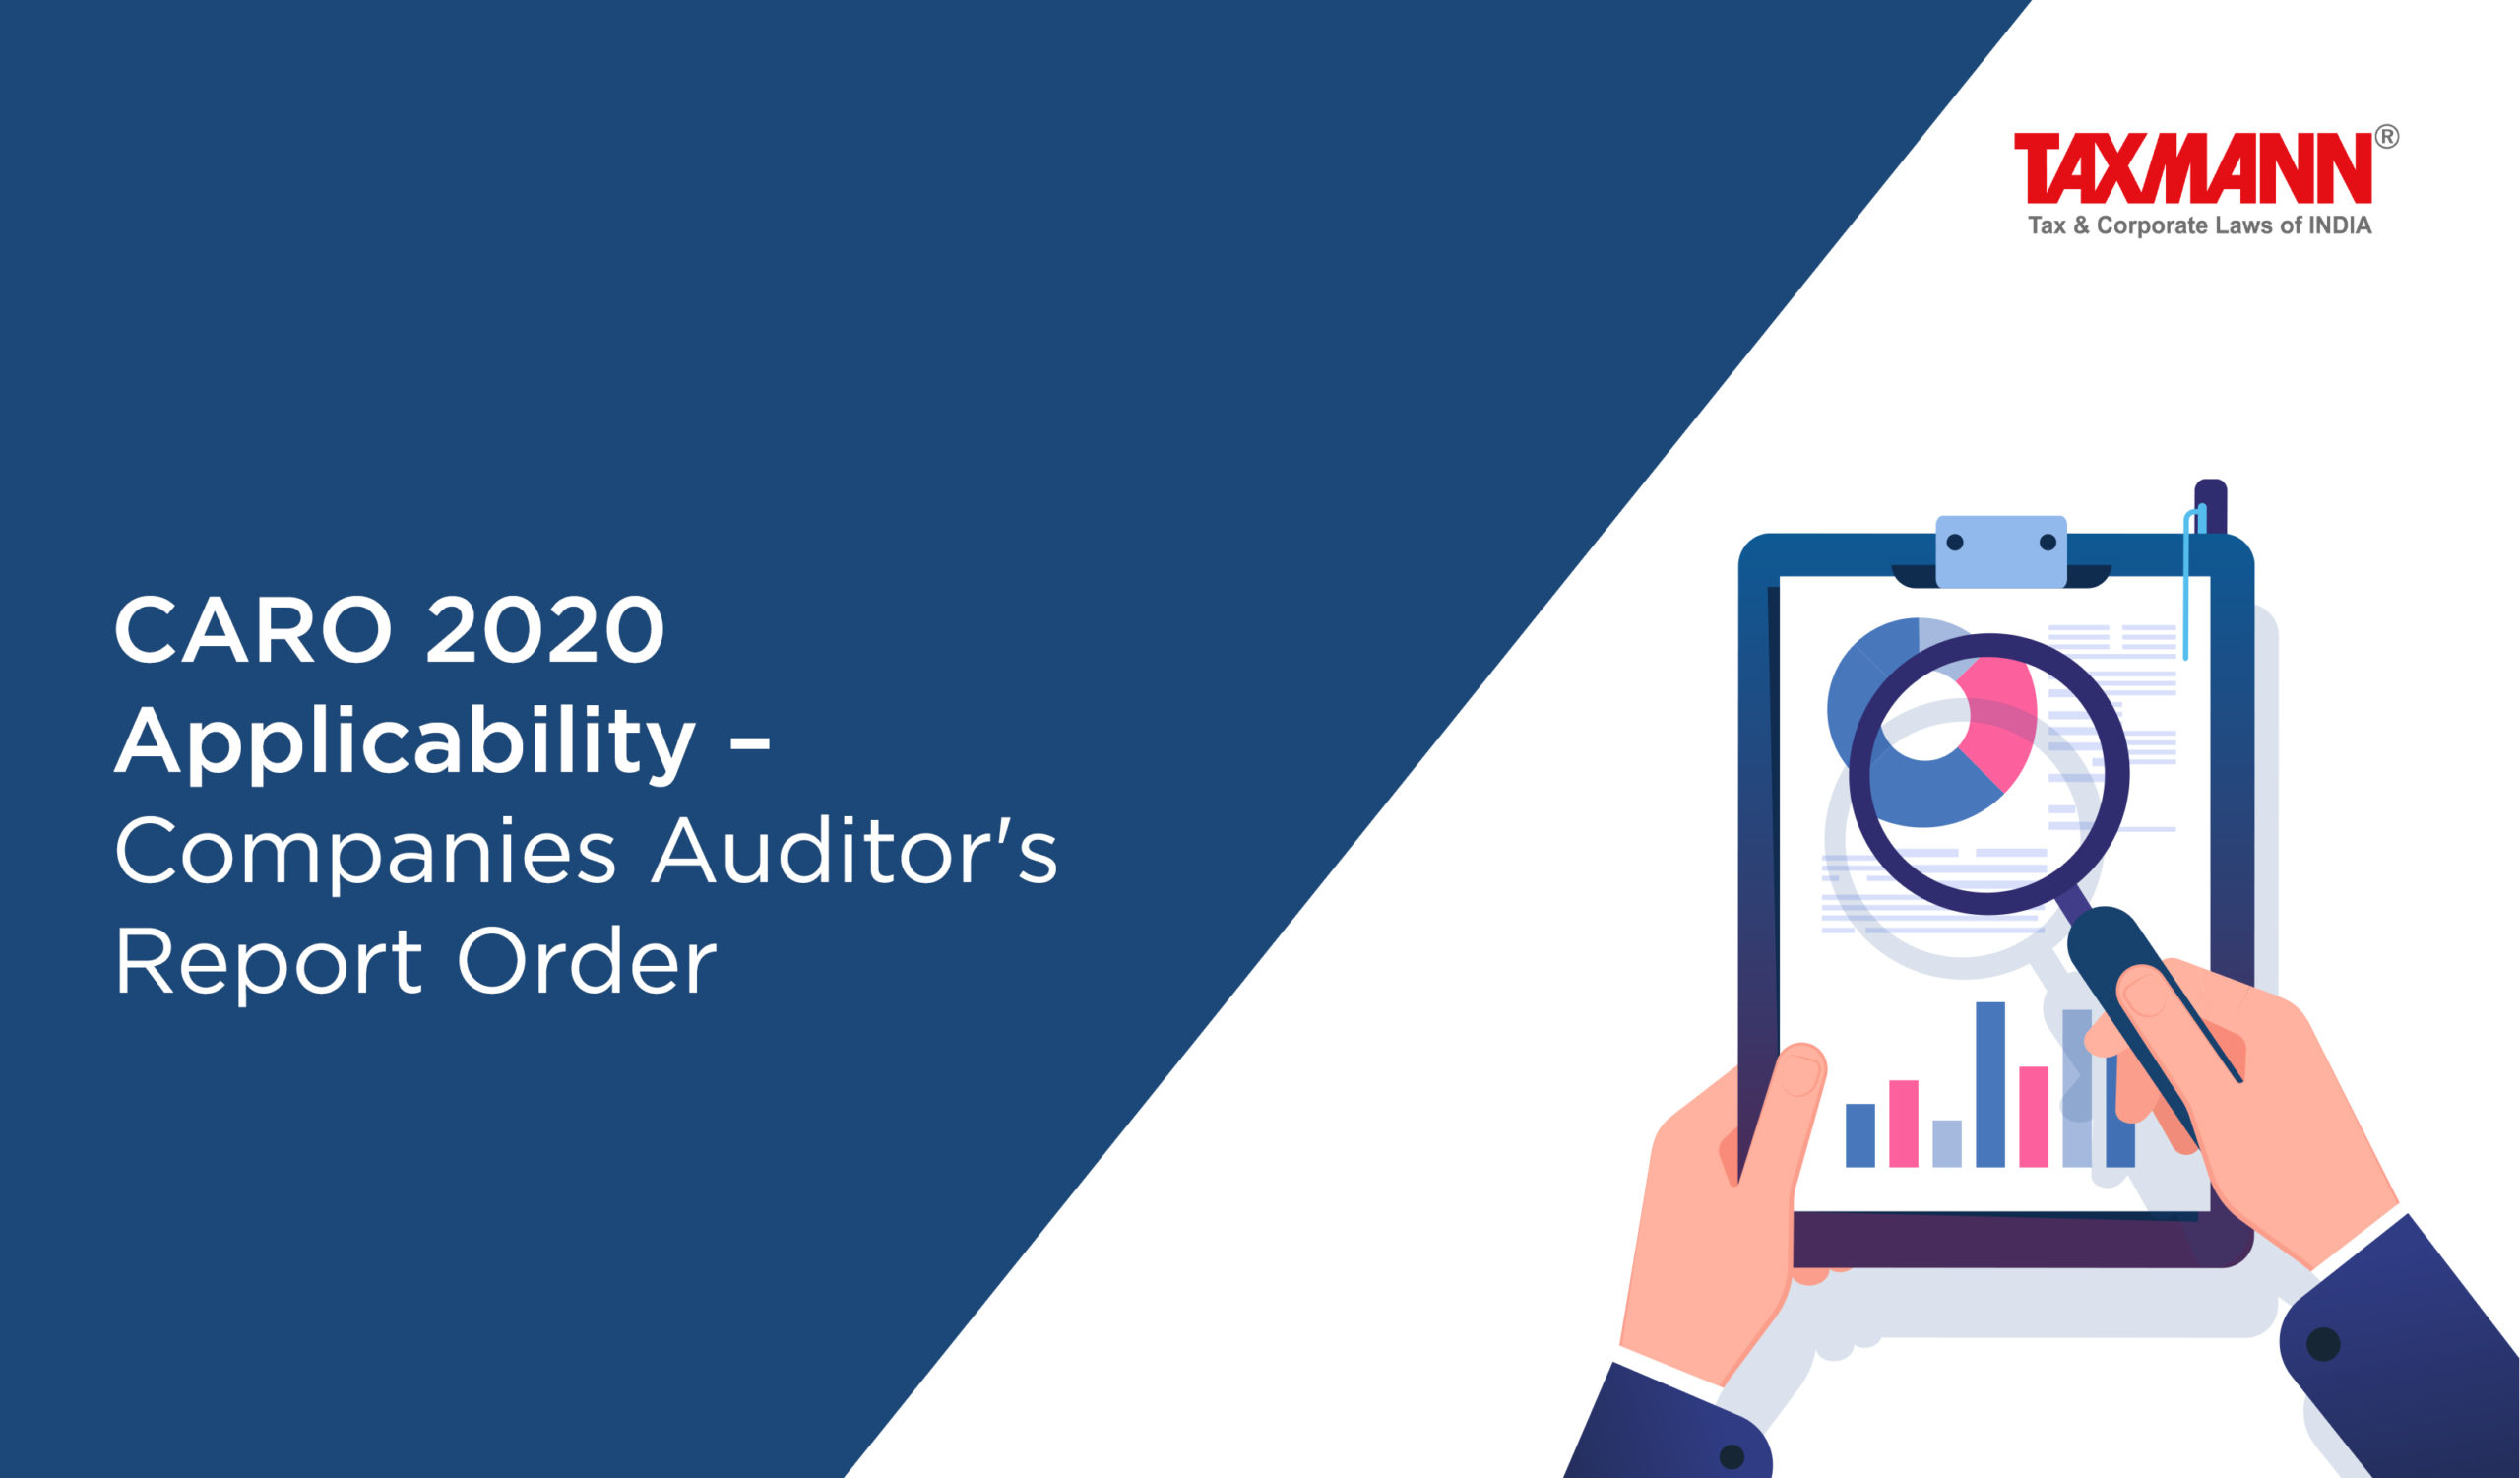 CARO 2020 applicability; caro applicability